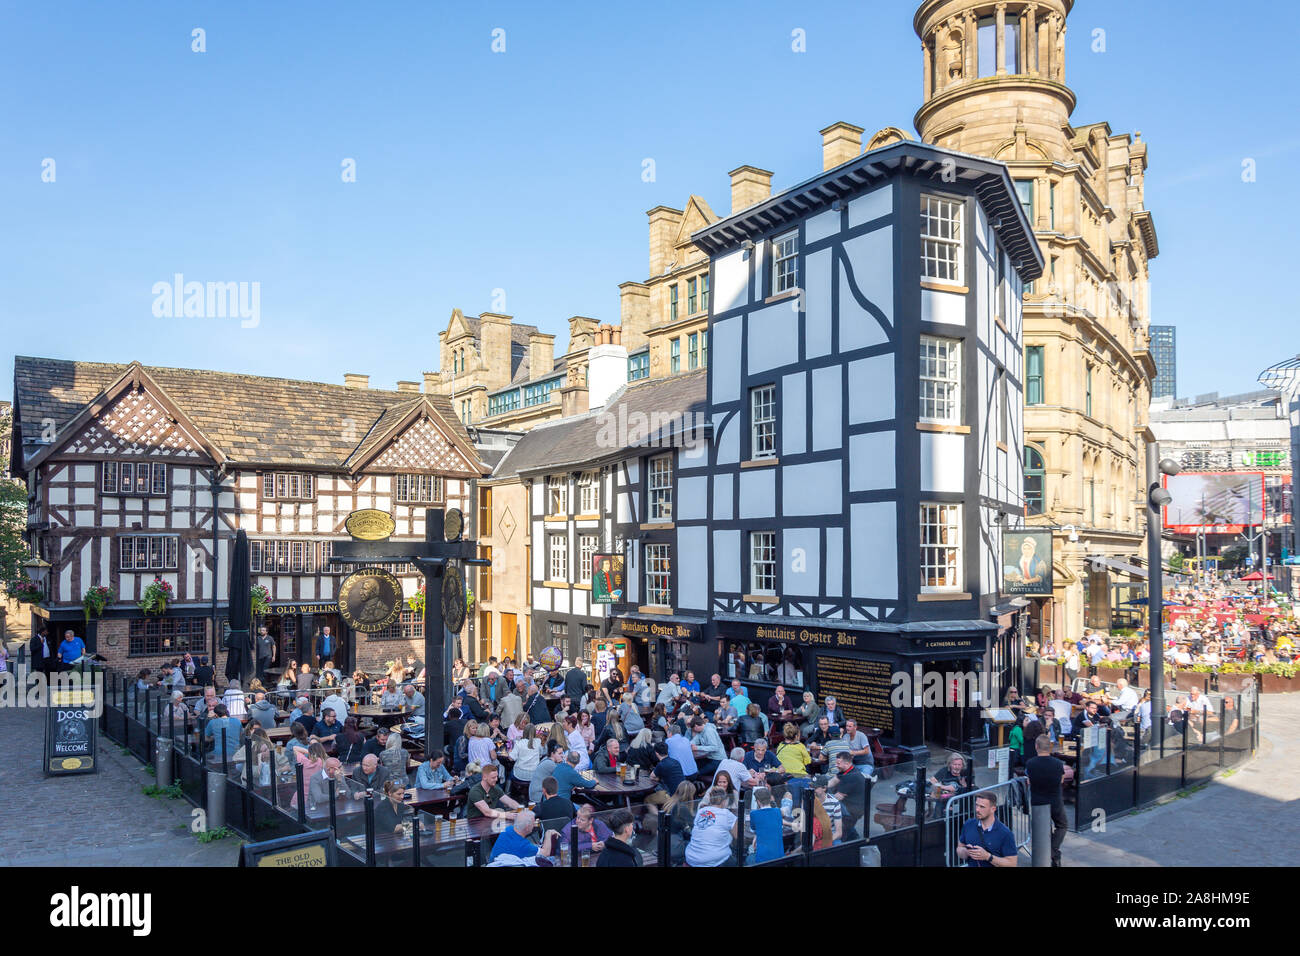 Die alte Wellington Pub & Sinclairs Oyster Bar, Exchange Square, Manchester, Greater Manchester, England, Vereinigtes Königreich Stockfoto